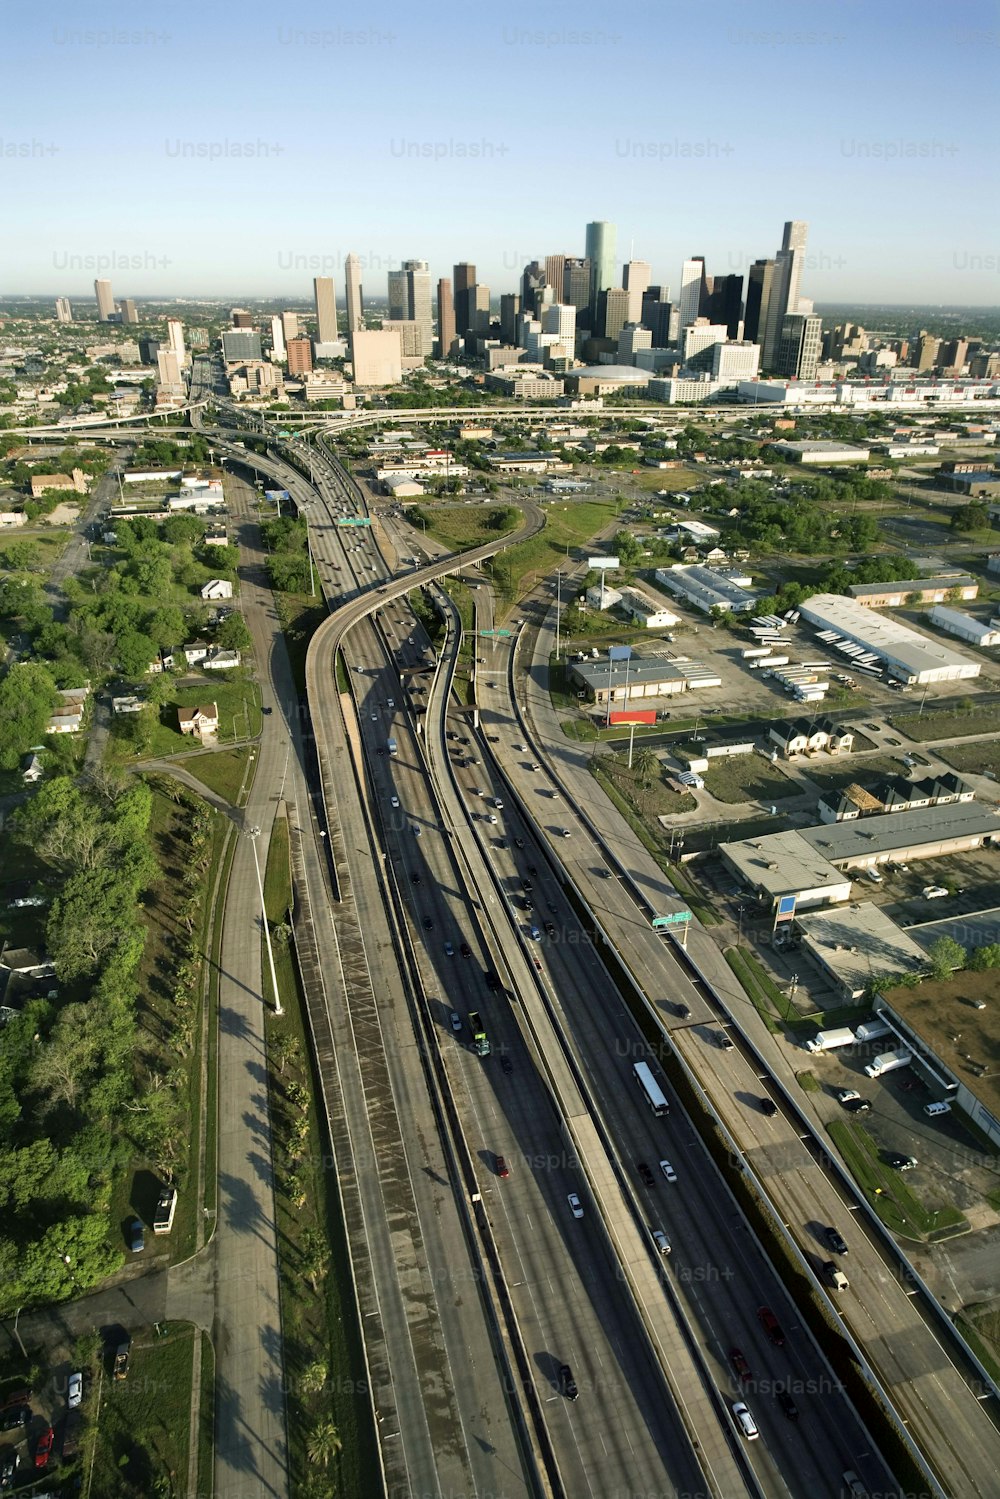 Une vue aérienne d’une ville avec un train sur les rails